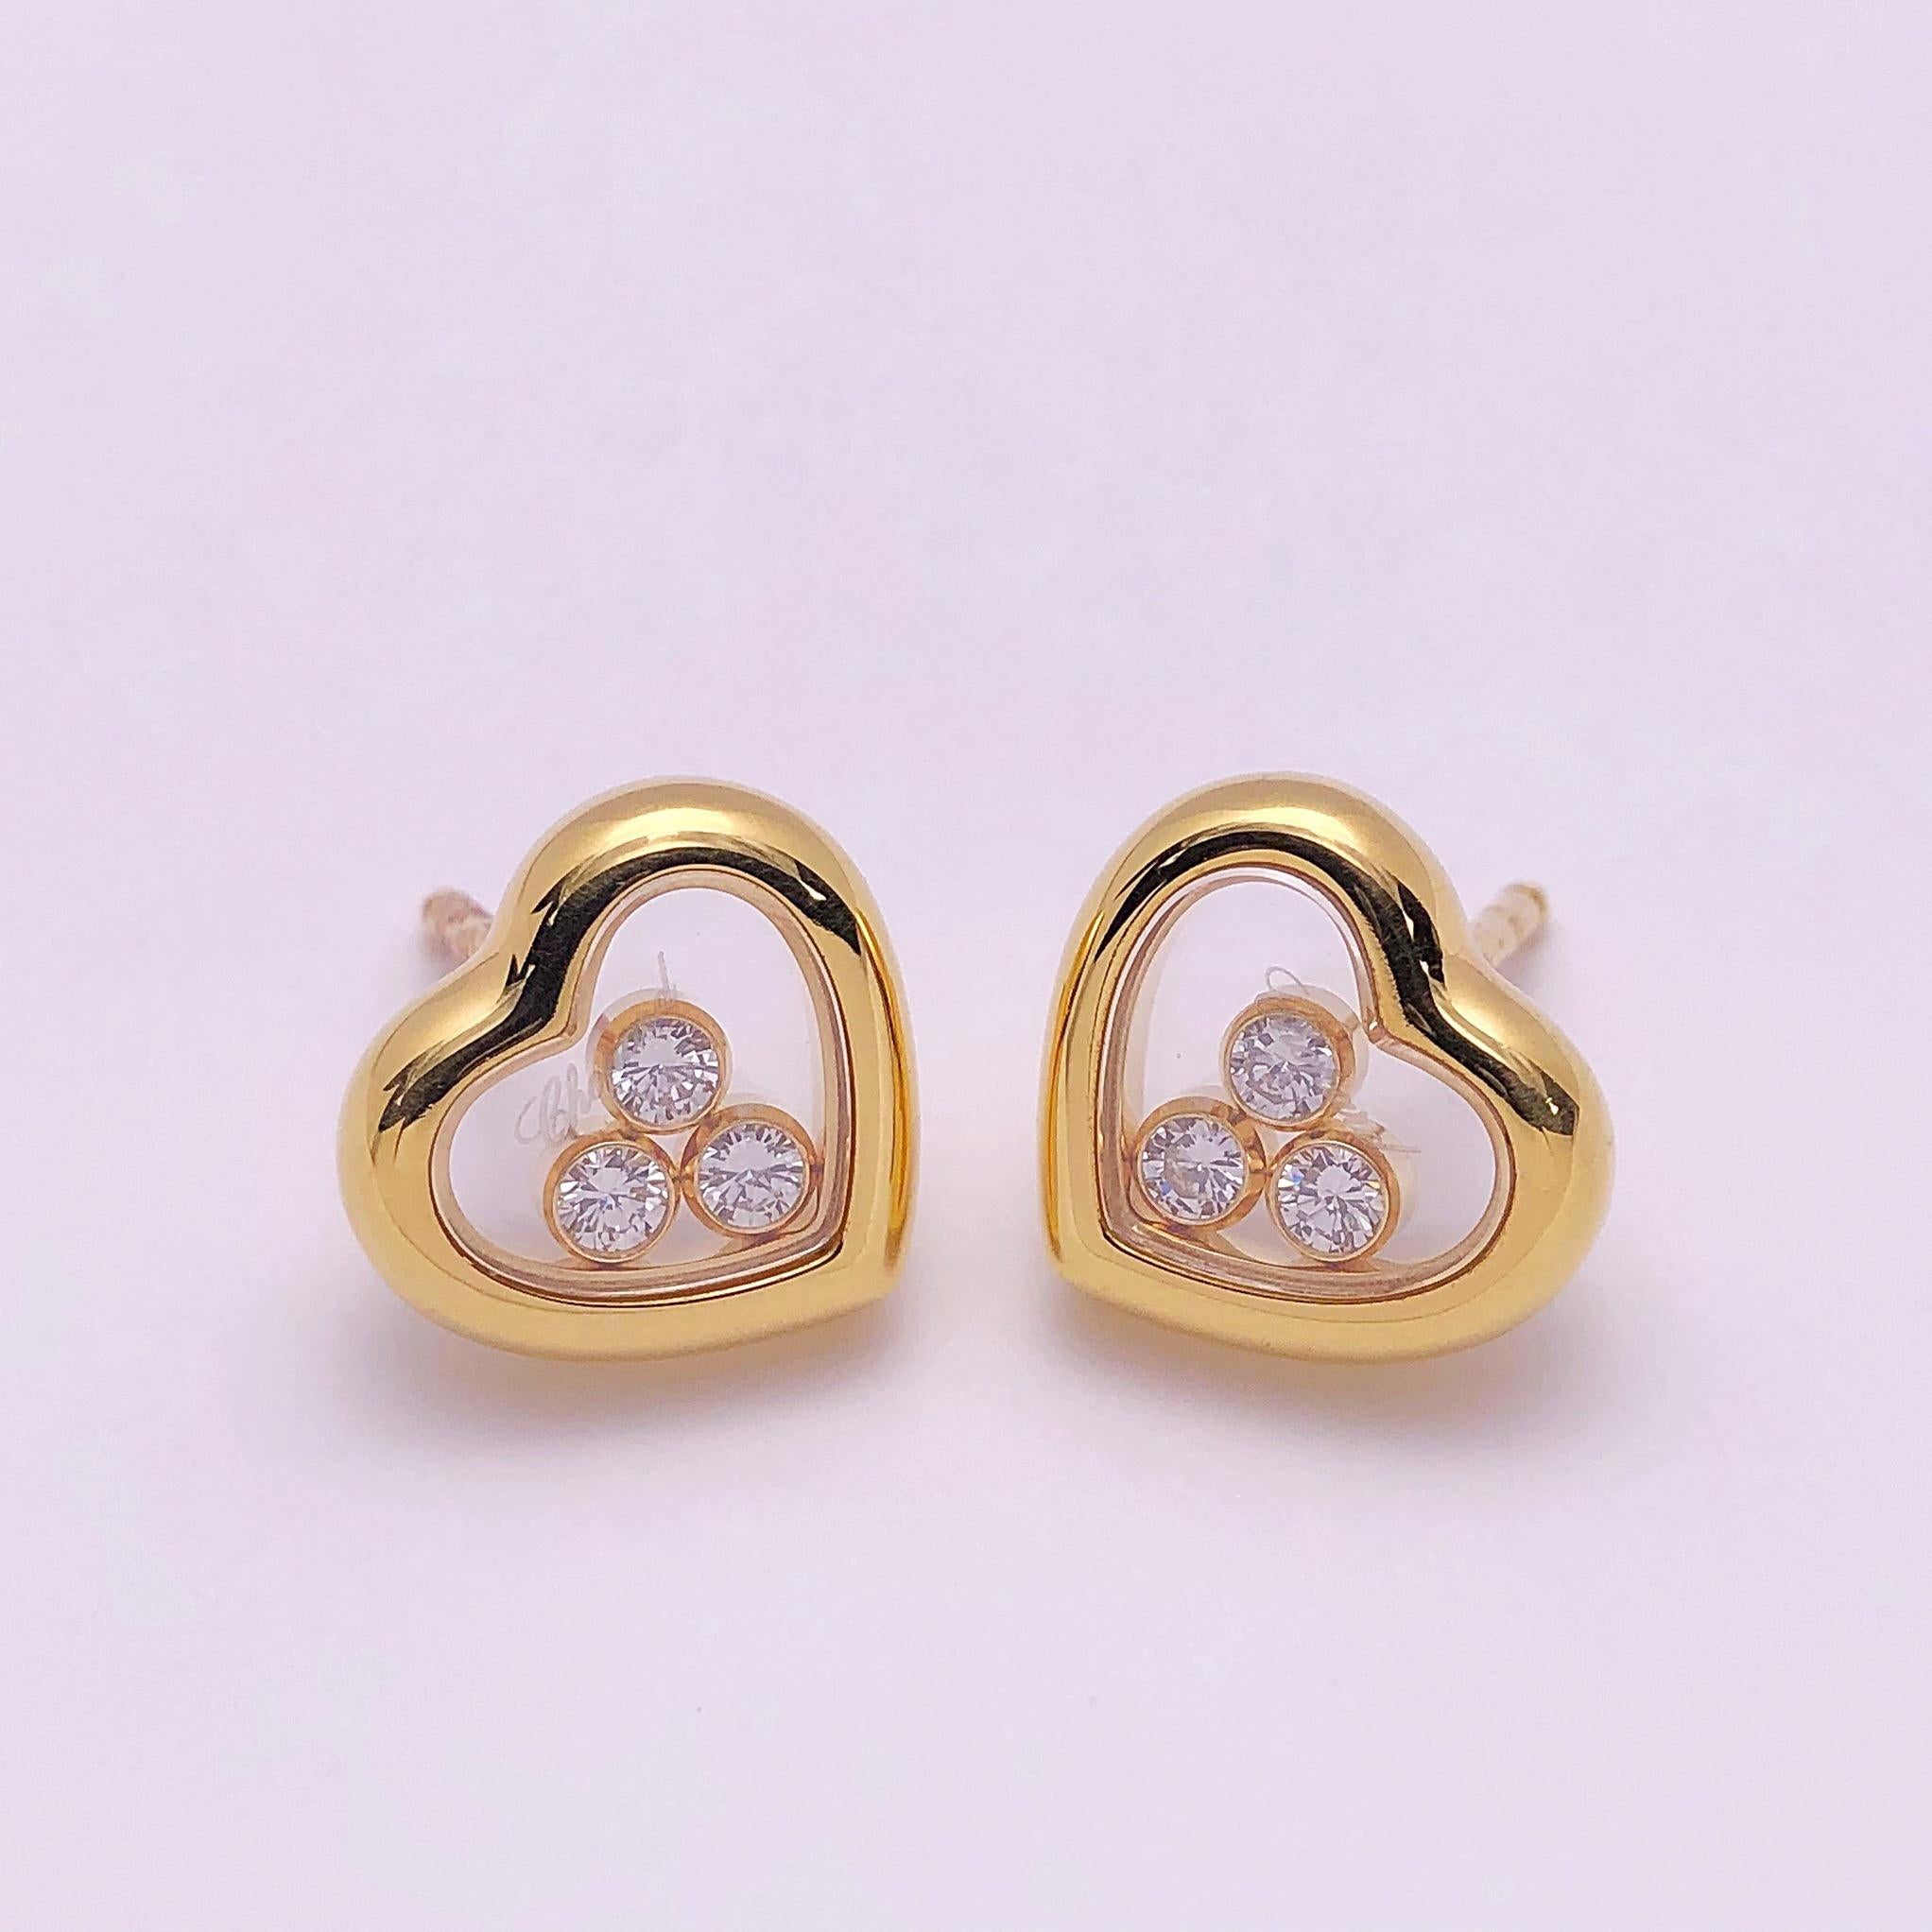 Chopard 18 Karat Gold Happy Diamond Heart Earrings with 3 Floating Diamonds (Rundschliff)